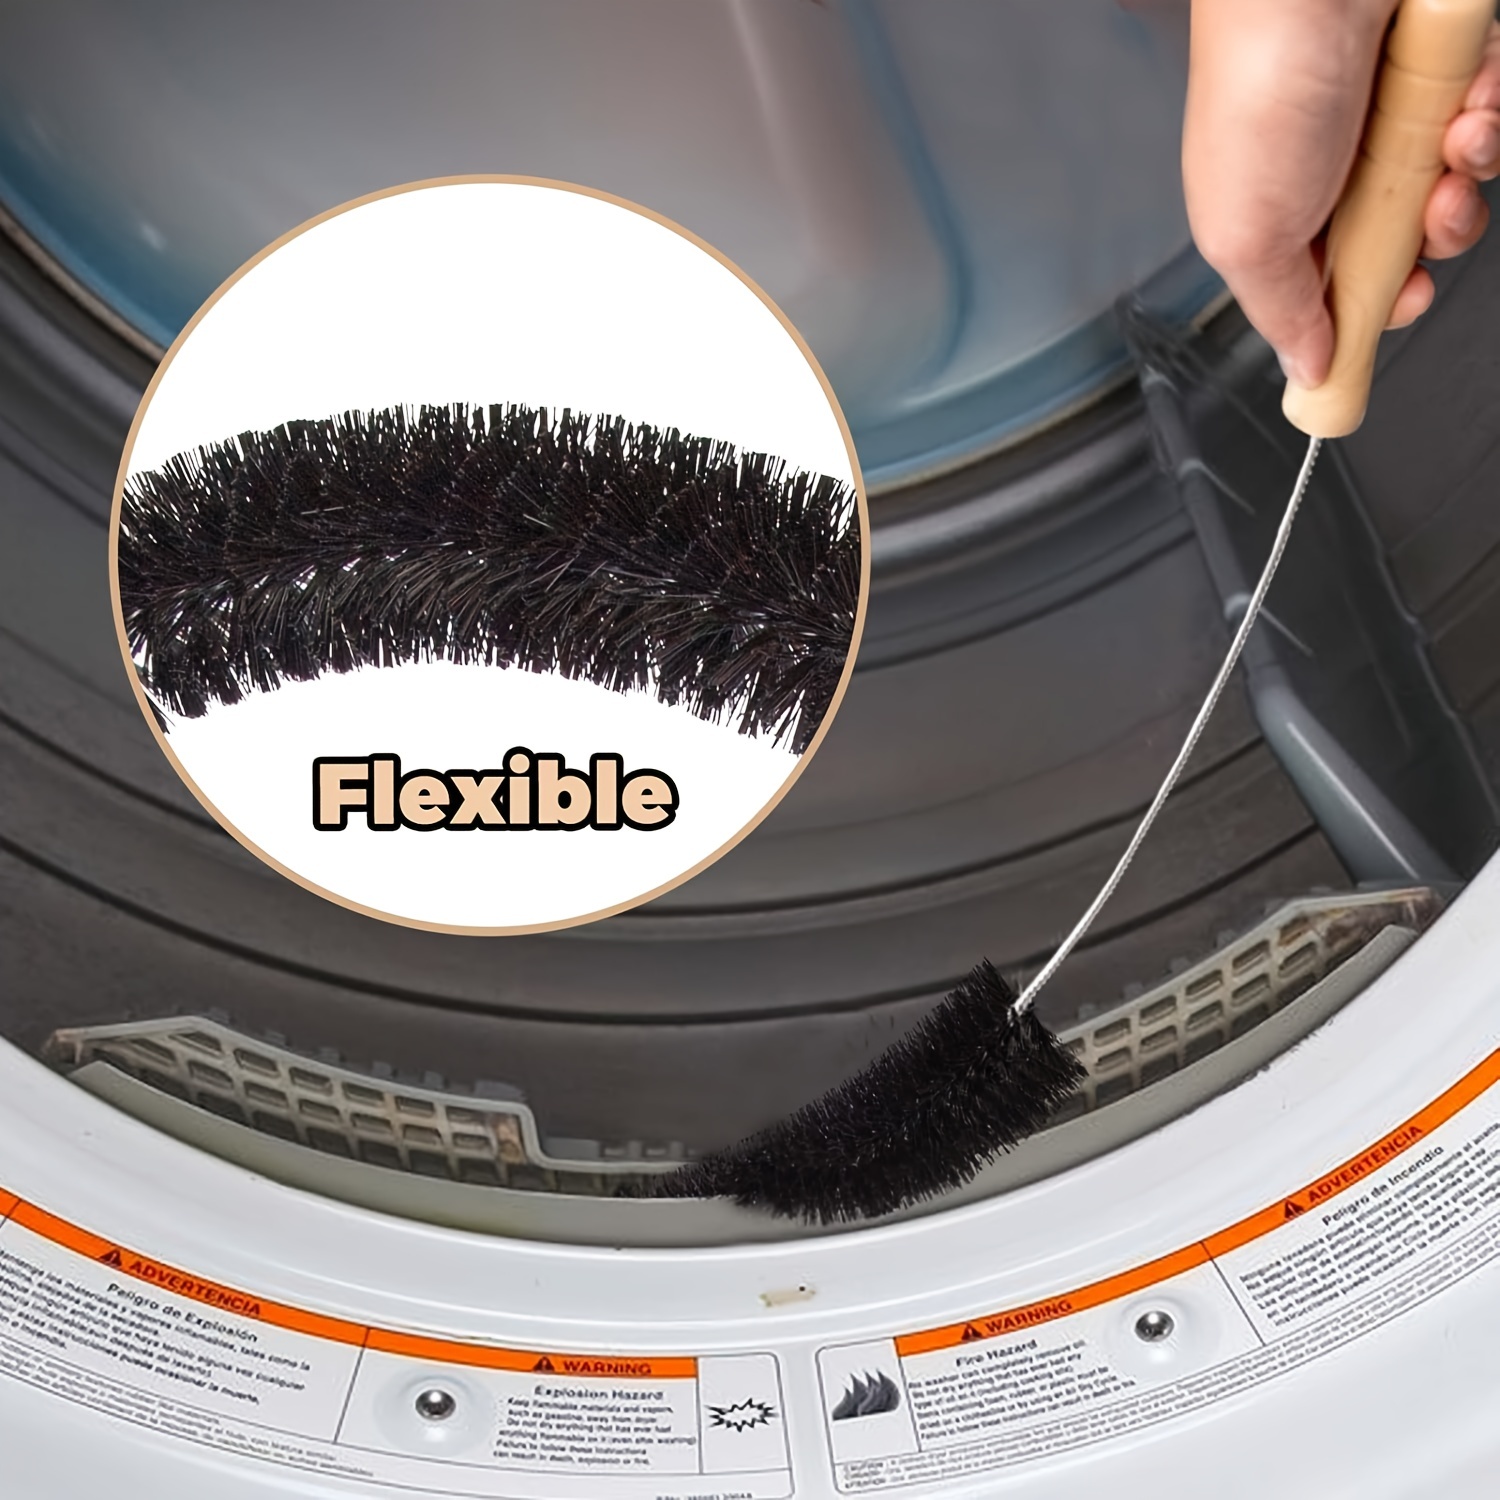 Tinksky Radiator Brush Long Flexible Dryer Cleaner Vent Brush